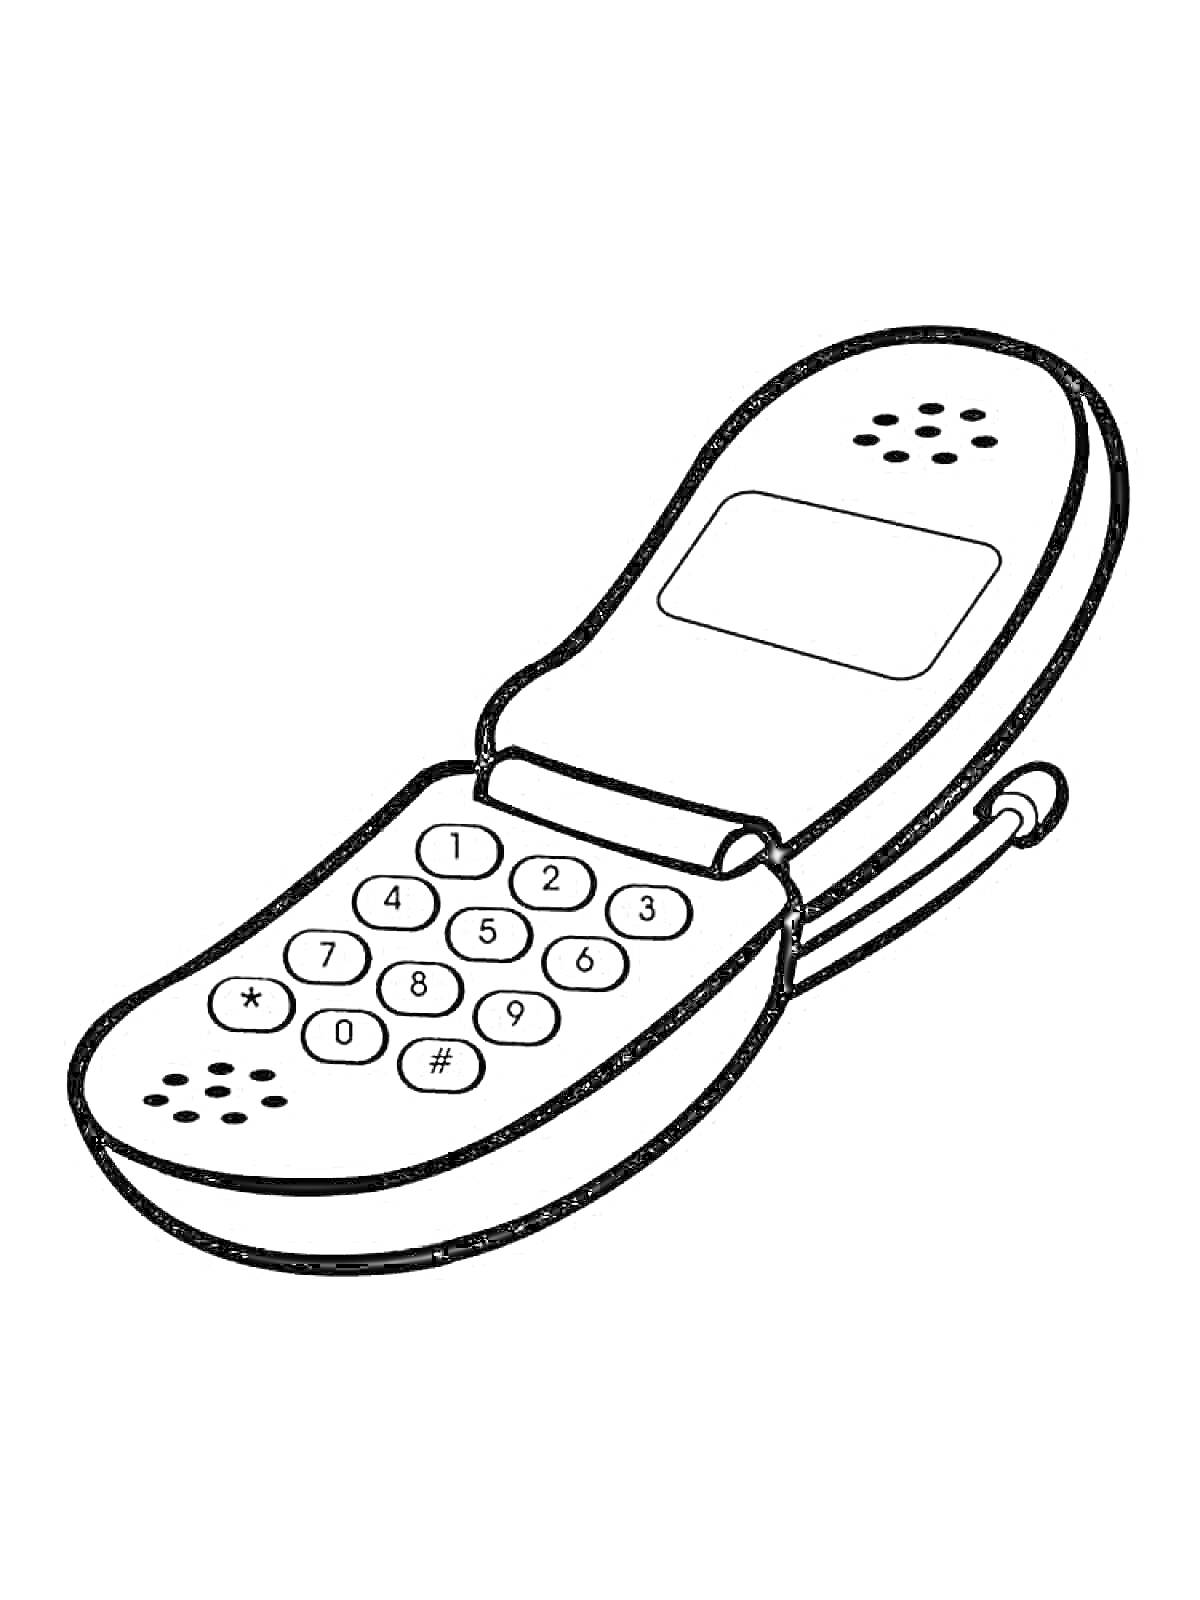 Раскраска раскладной телефон с клавишами, экраном и антенной